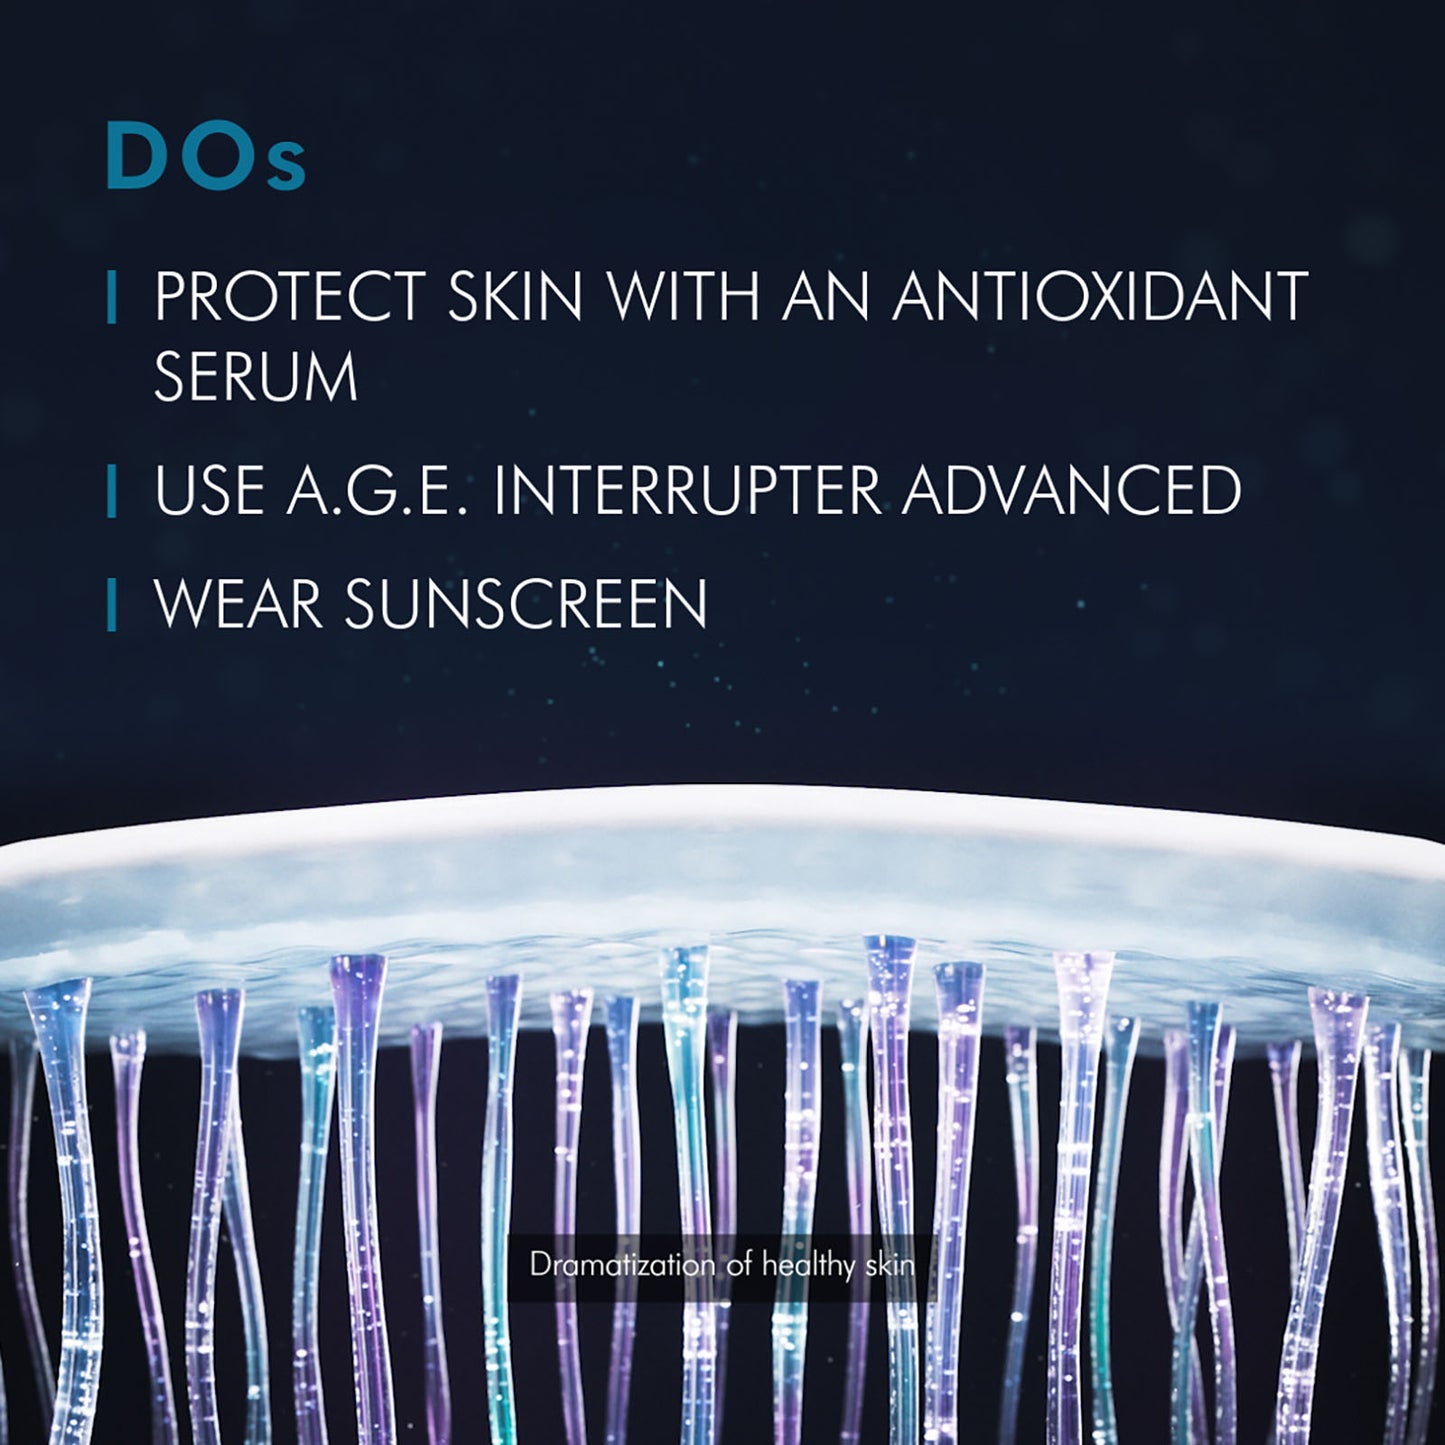 SkinCeuticals A.G.E Interrupter Advanced 48 ml / 1.7fl oz